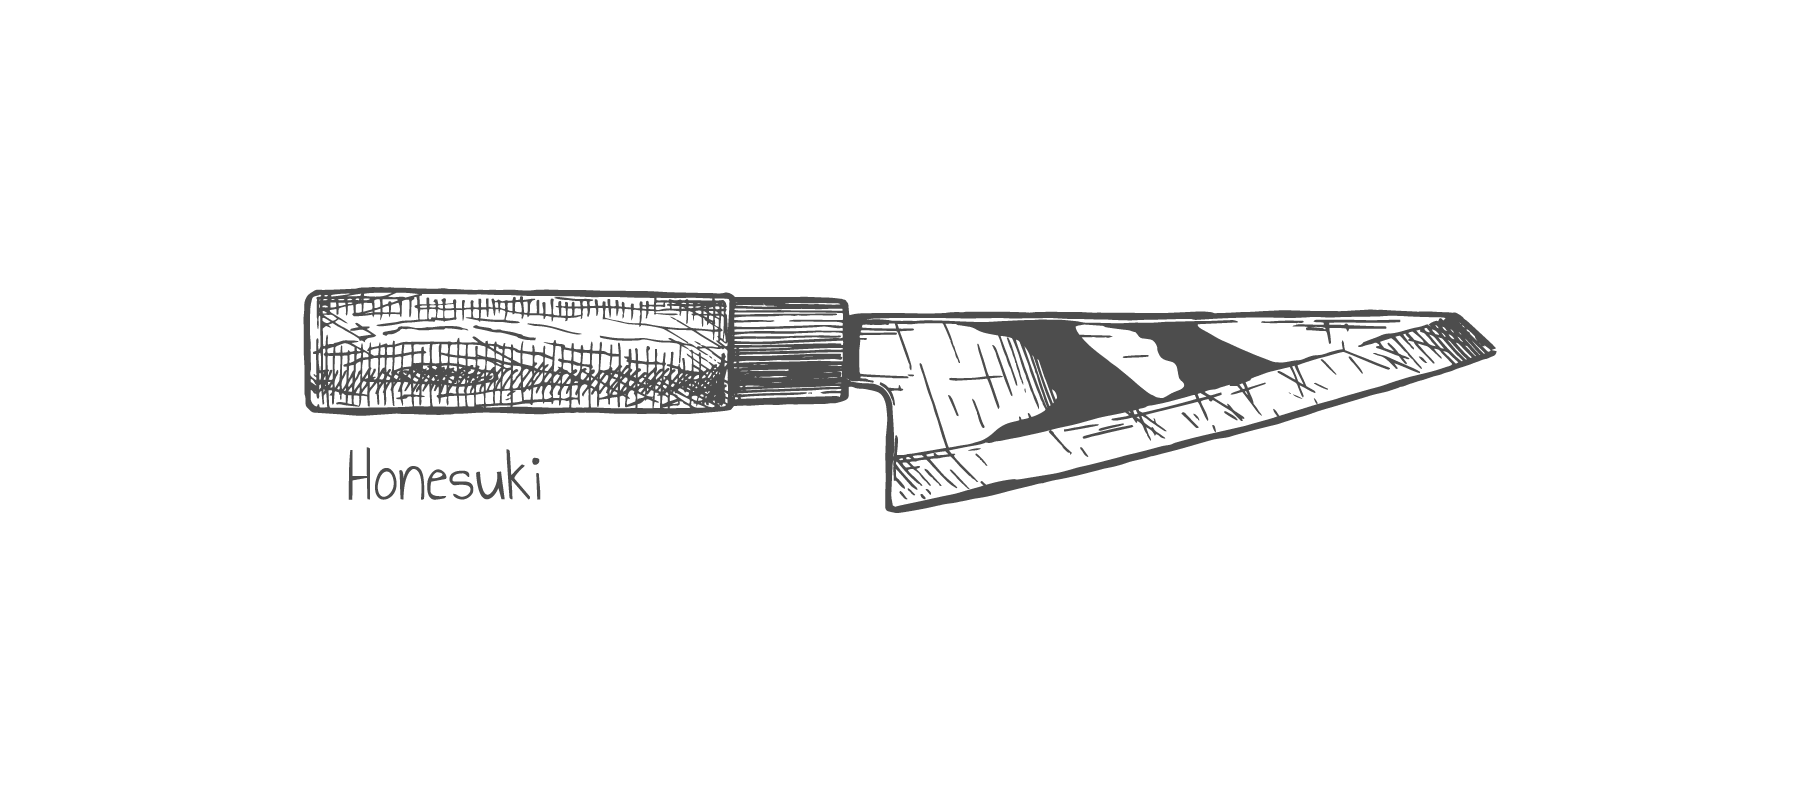 Honesuki Japanese knife shape